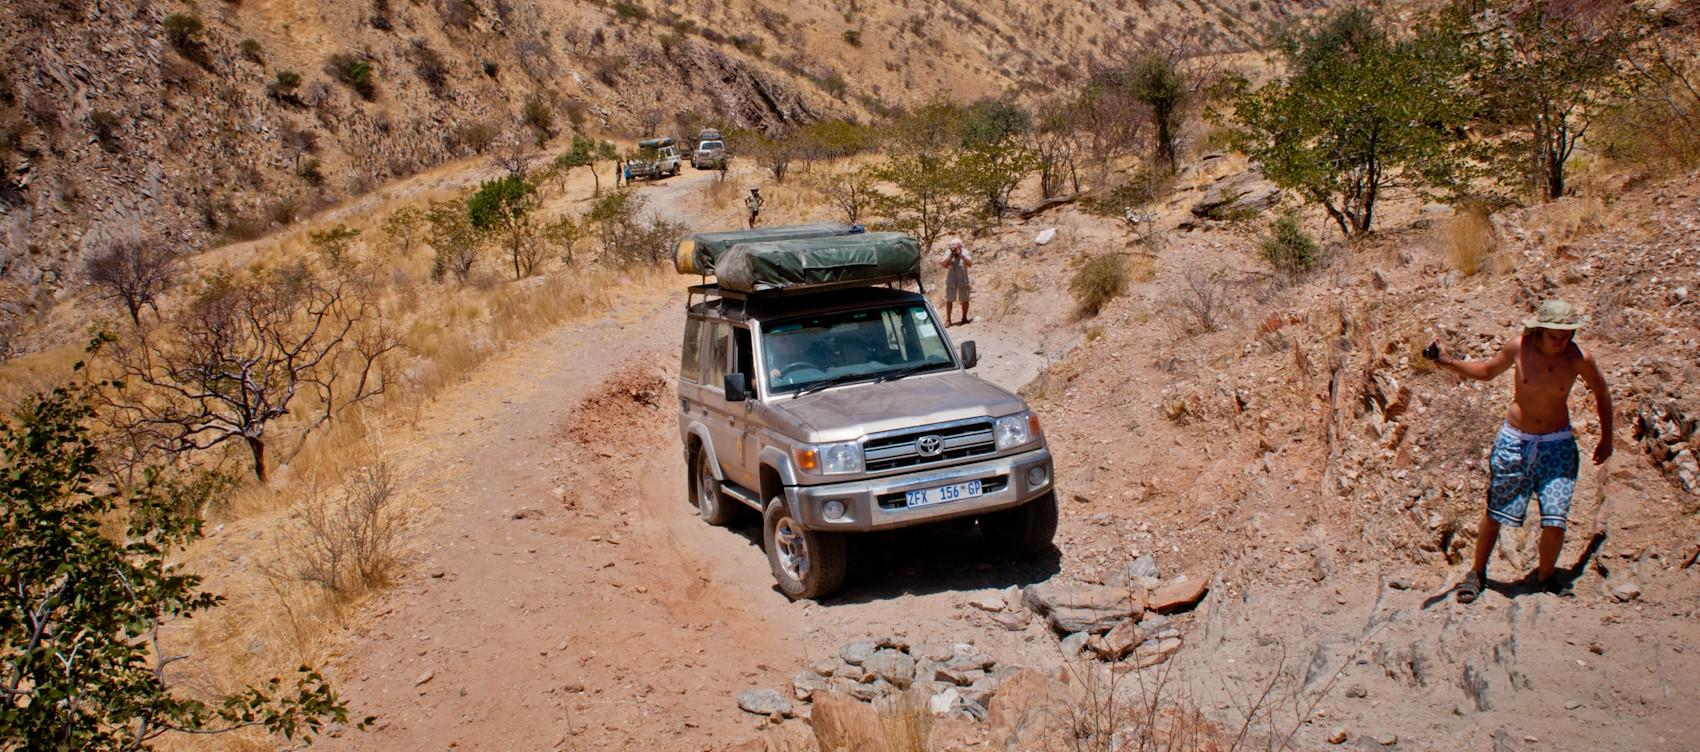 Przekroczymy ją i podejmiemy się wjazdu na najtrudniejszą przełęcz Namibii, jakim jest Van Zyll. Po całodziennym off-roadzie opuszczamy tereny plemiona Himba i jedziemy do wodospadów Epupa Falls.